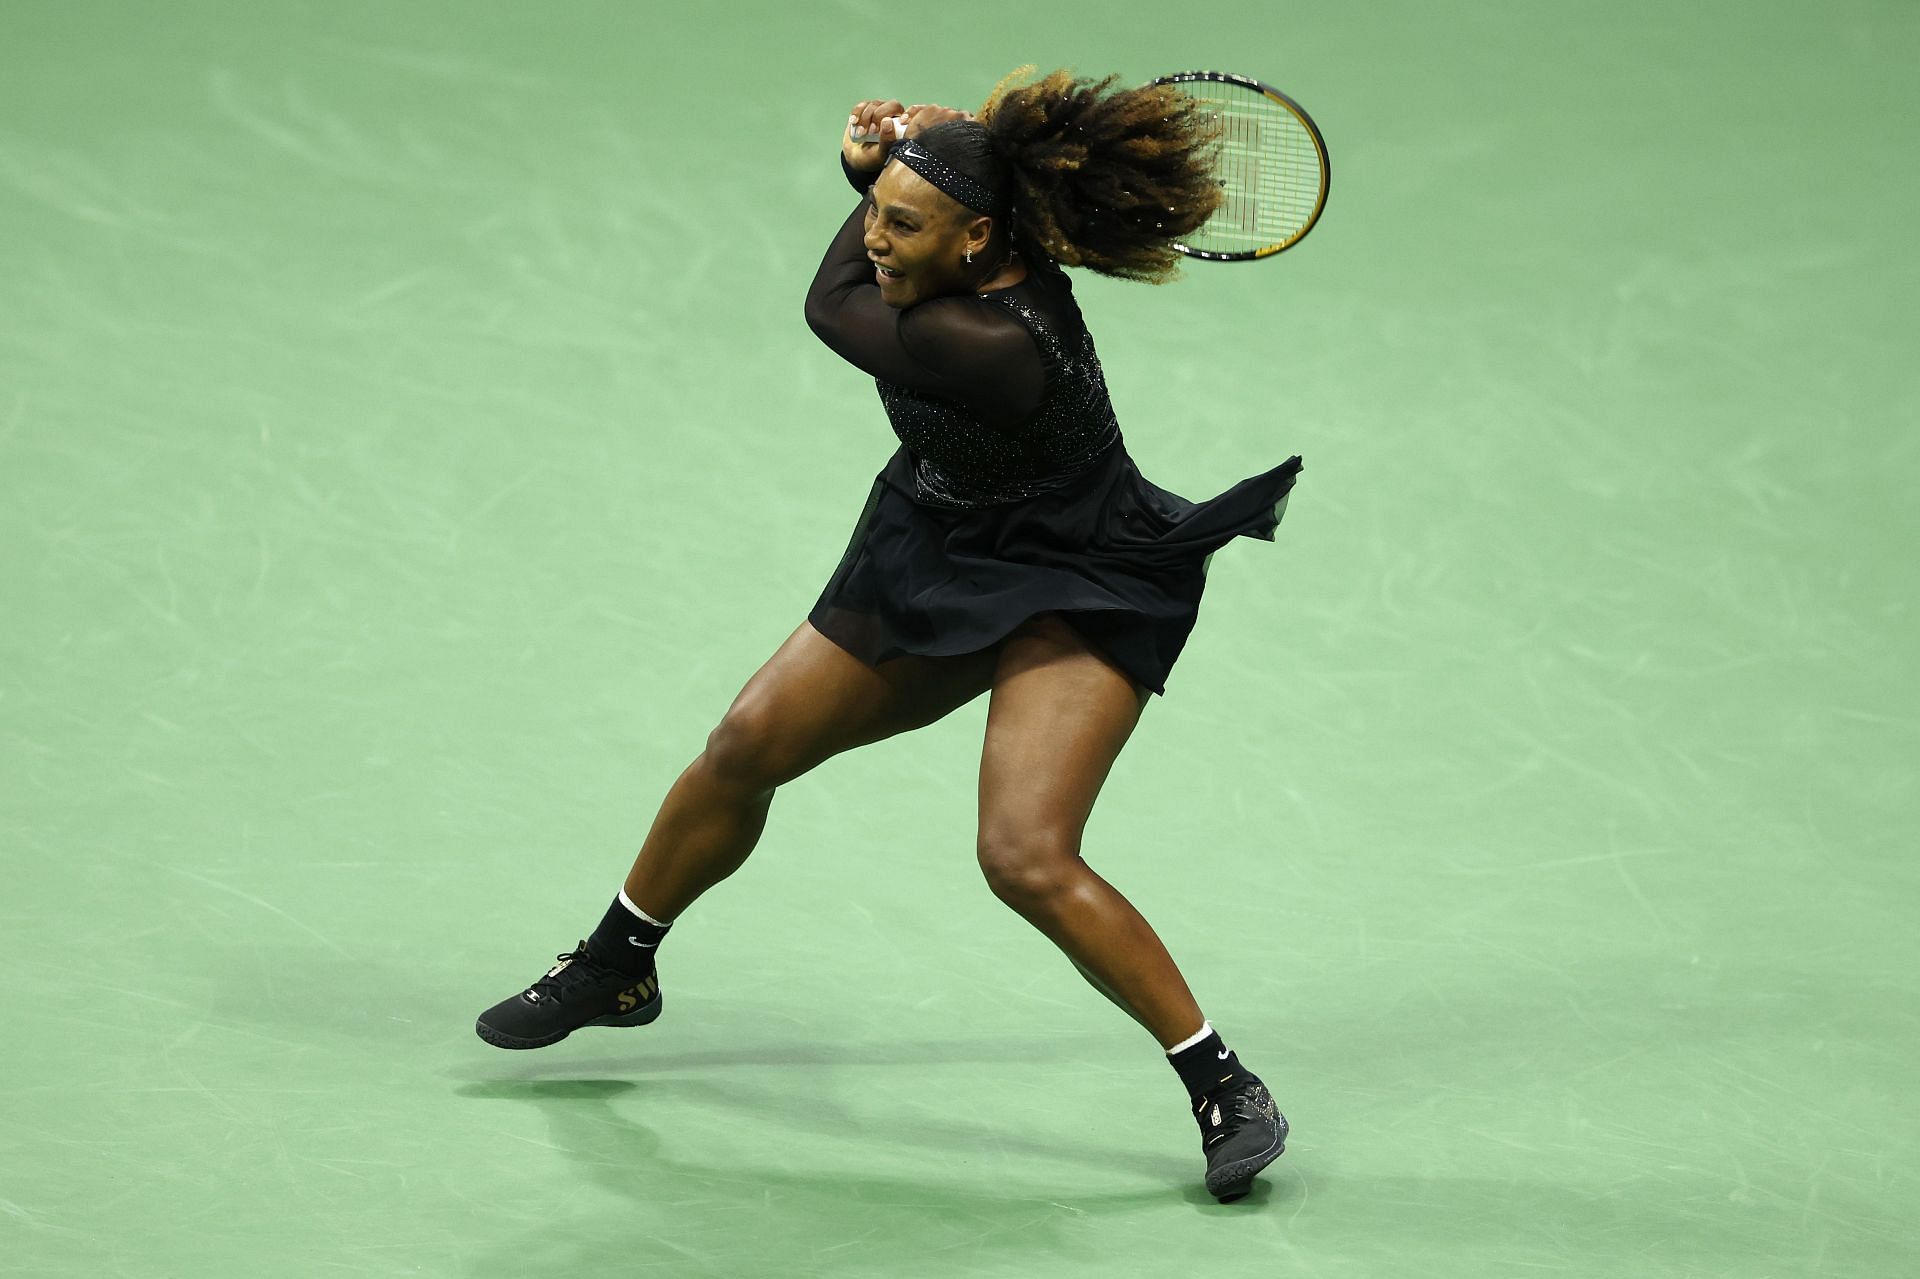 Serena Williams beat Anett Kontaveit in the second round